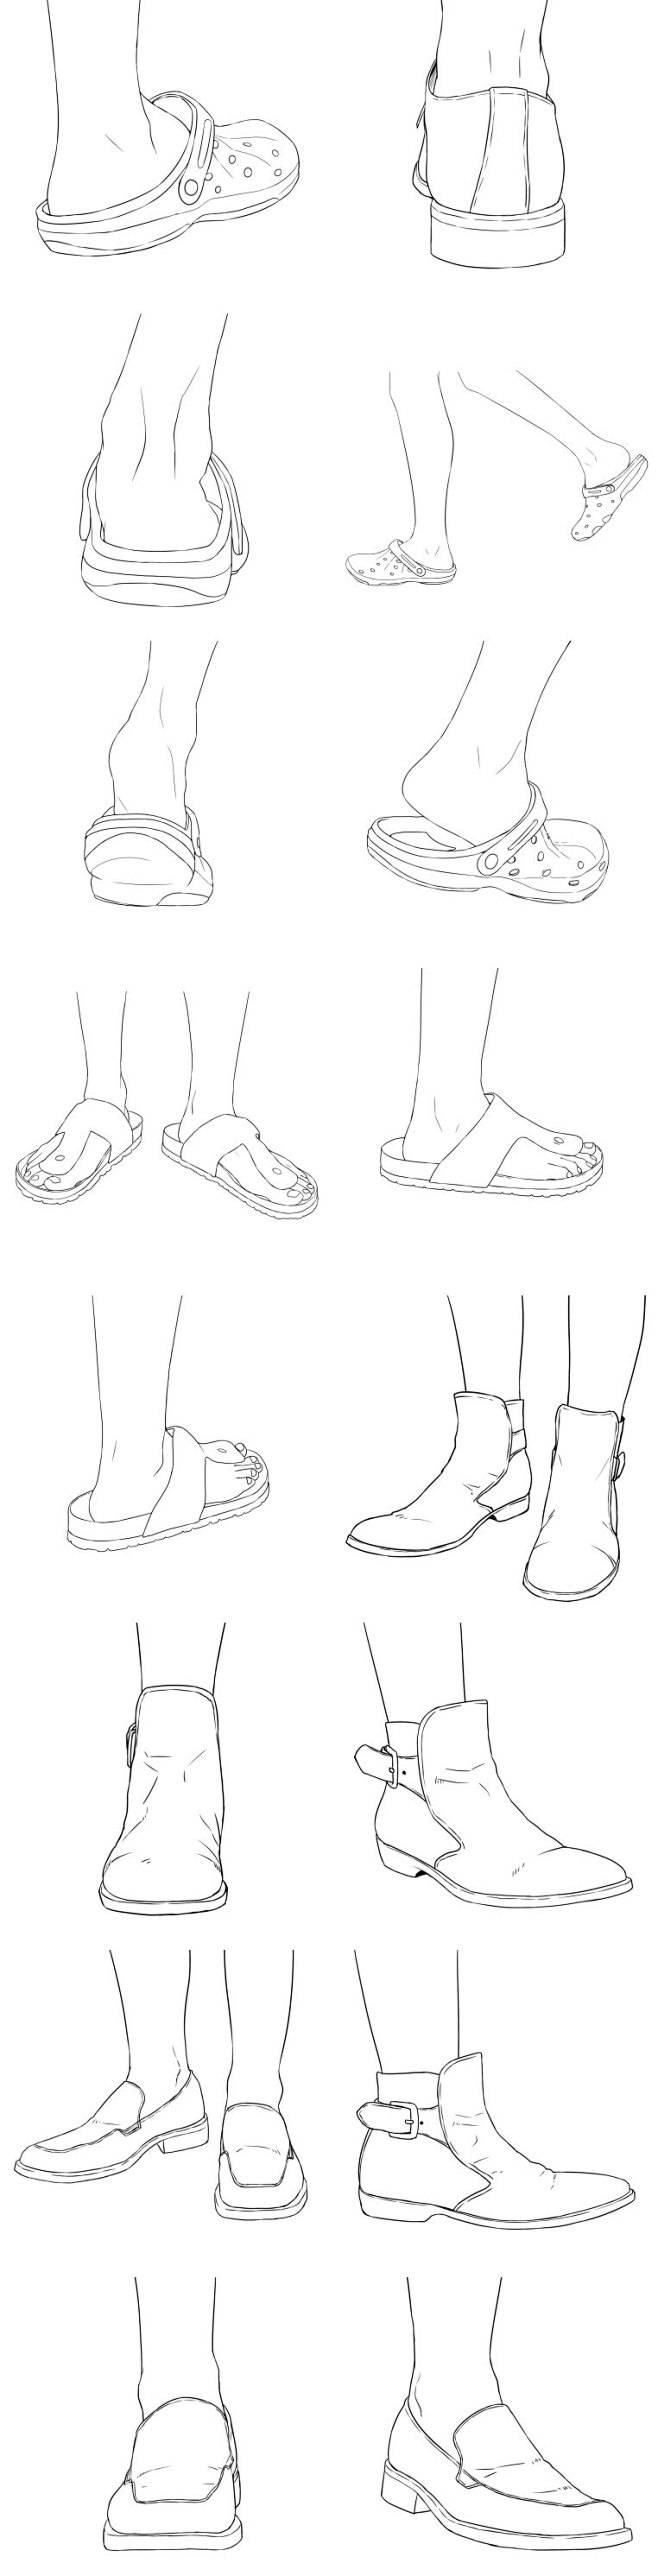 278各式人体穿鞋的脚姿态线稿漫画插画教...